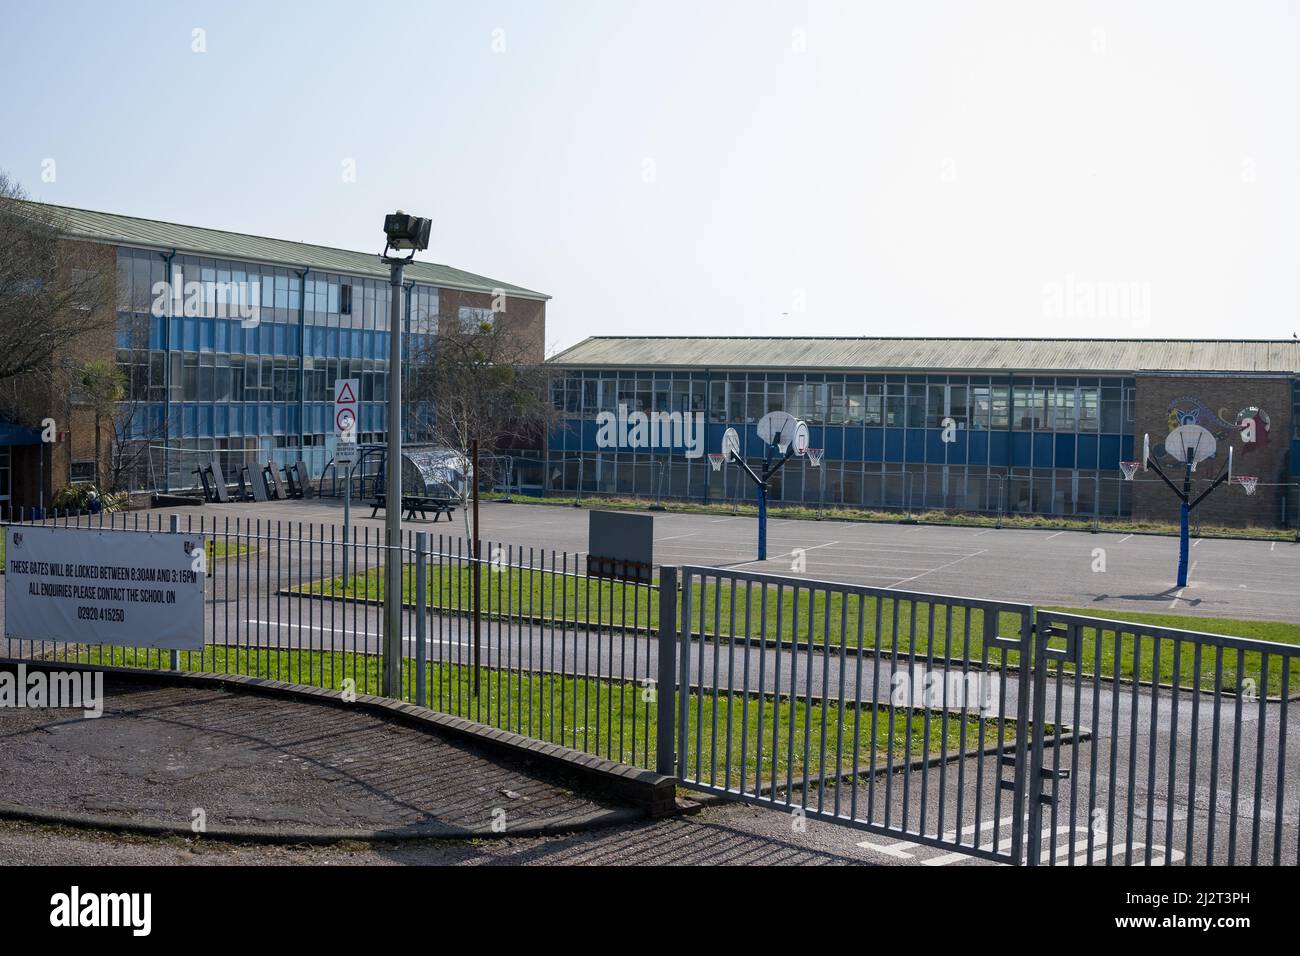 Vue extérieure du lycée Cantonian de Cardiff, pays de Galles, Royaume-Uni. Banque D'Images